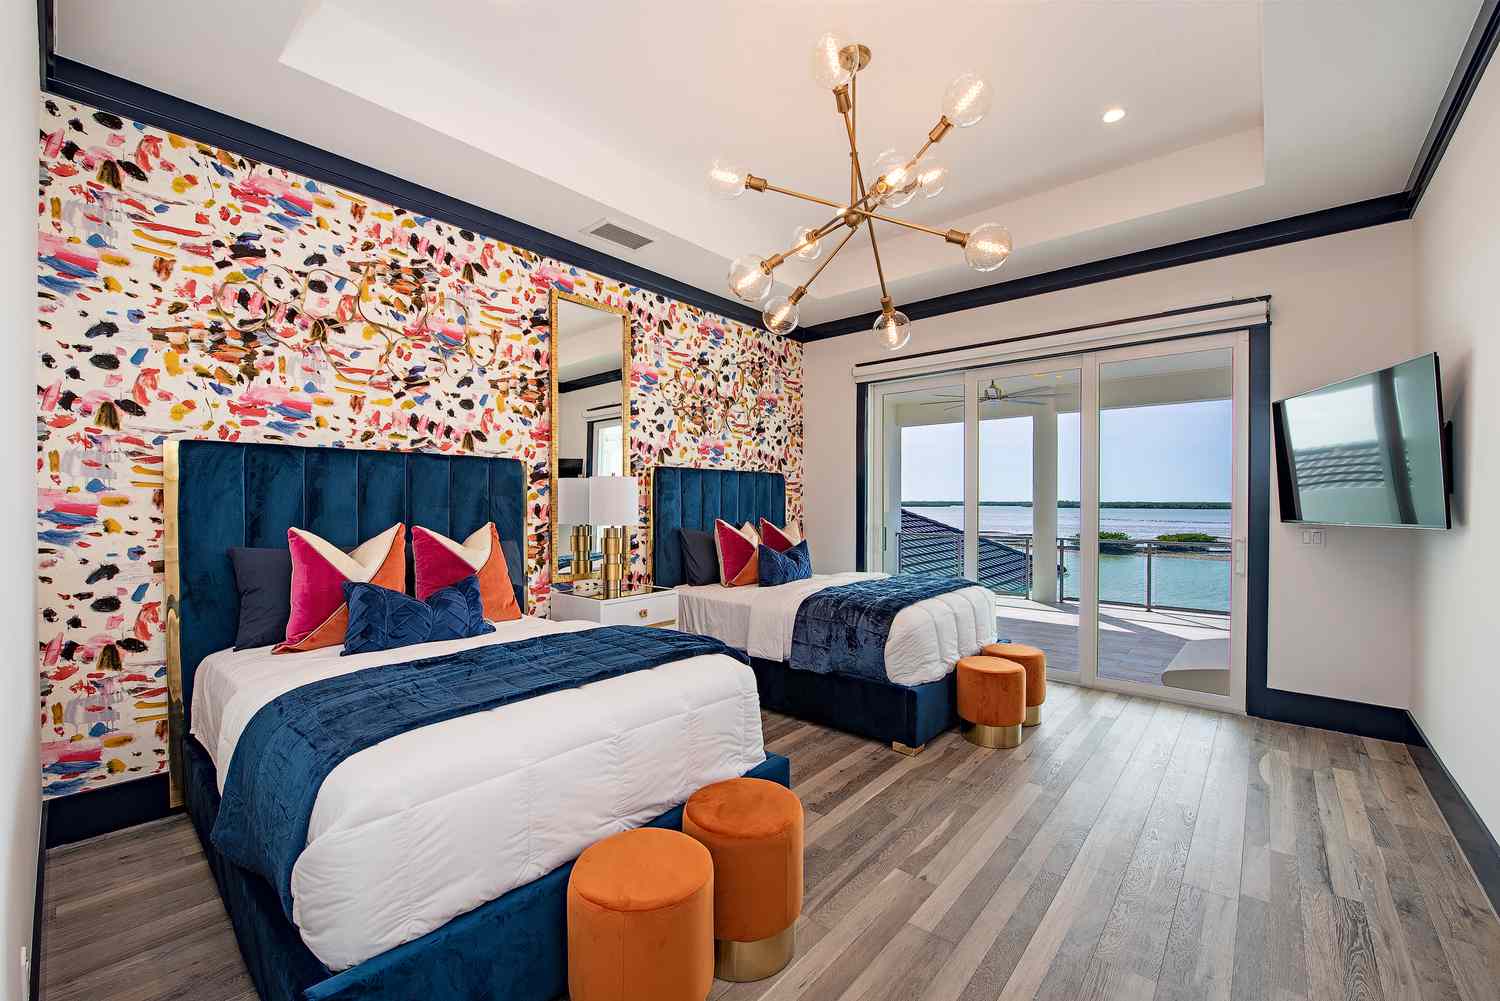 Um quarto com duas camas de casal e papel de parede colorido em uma parede de destaque